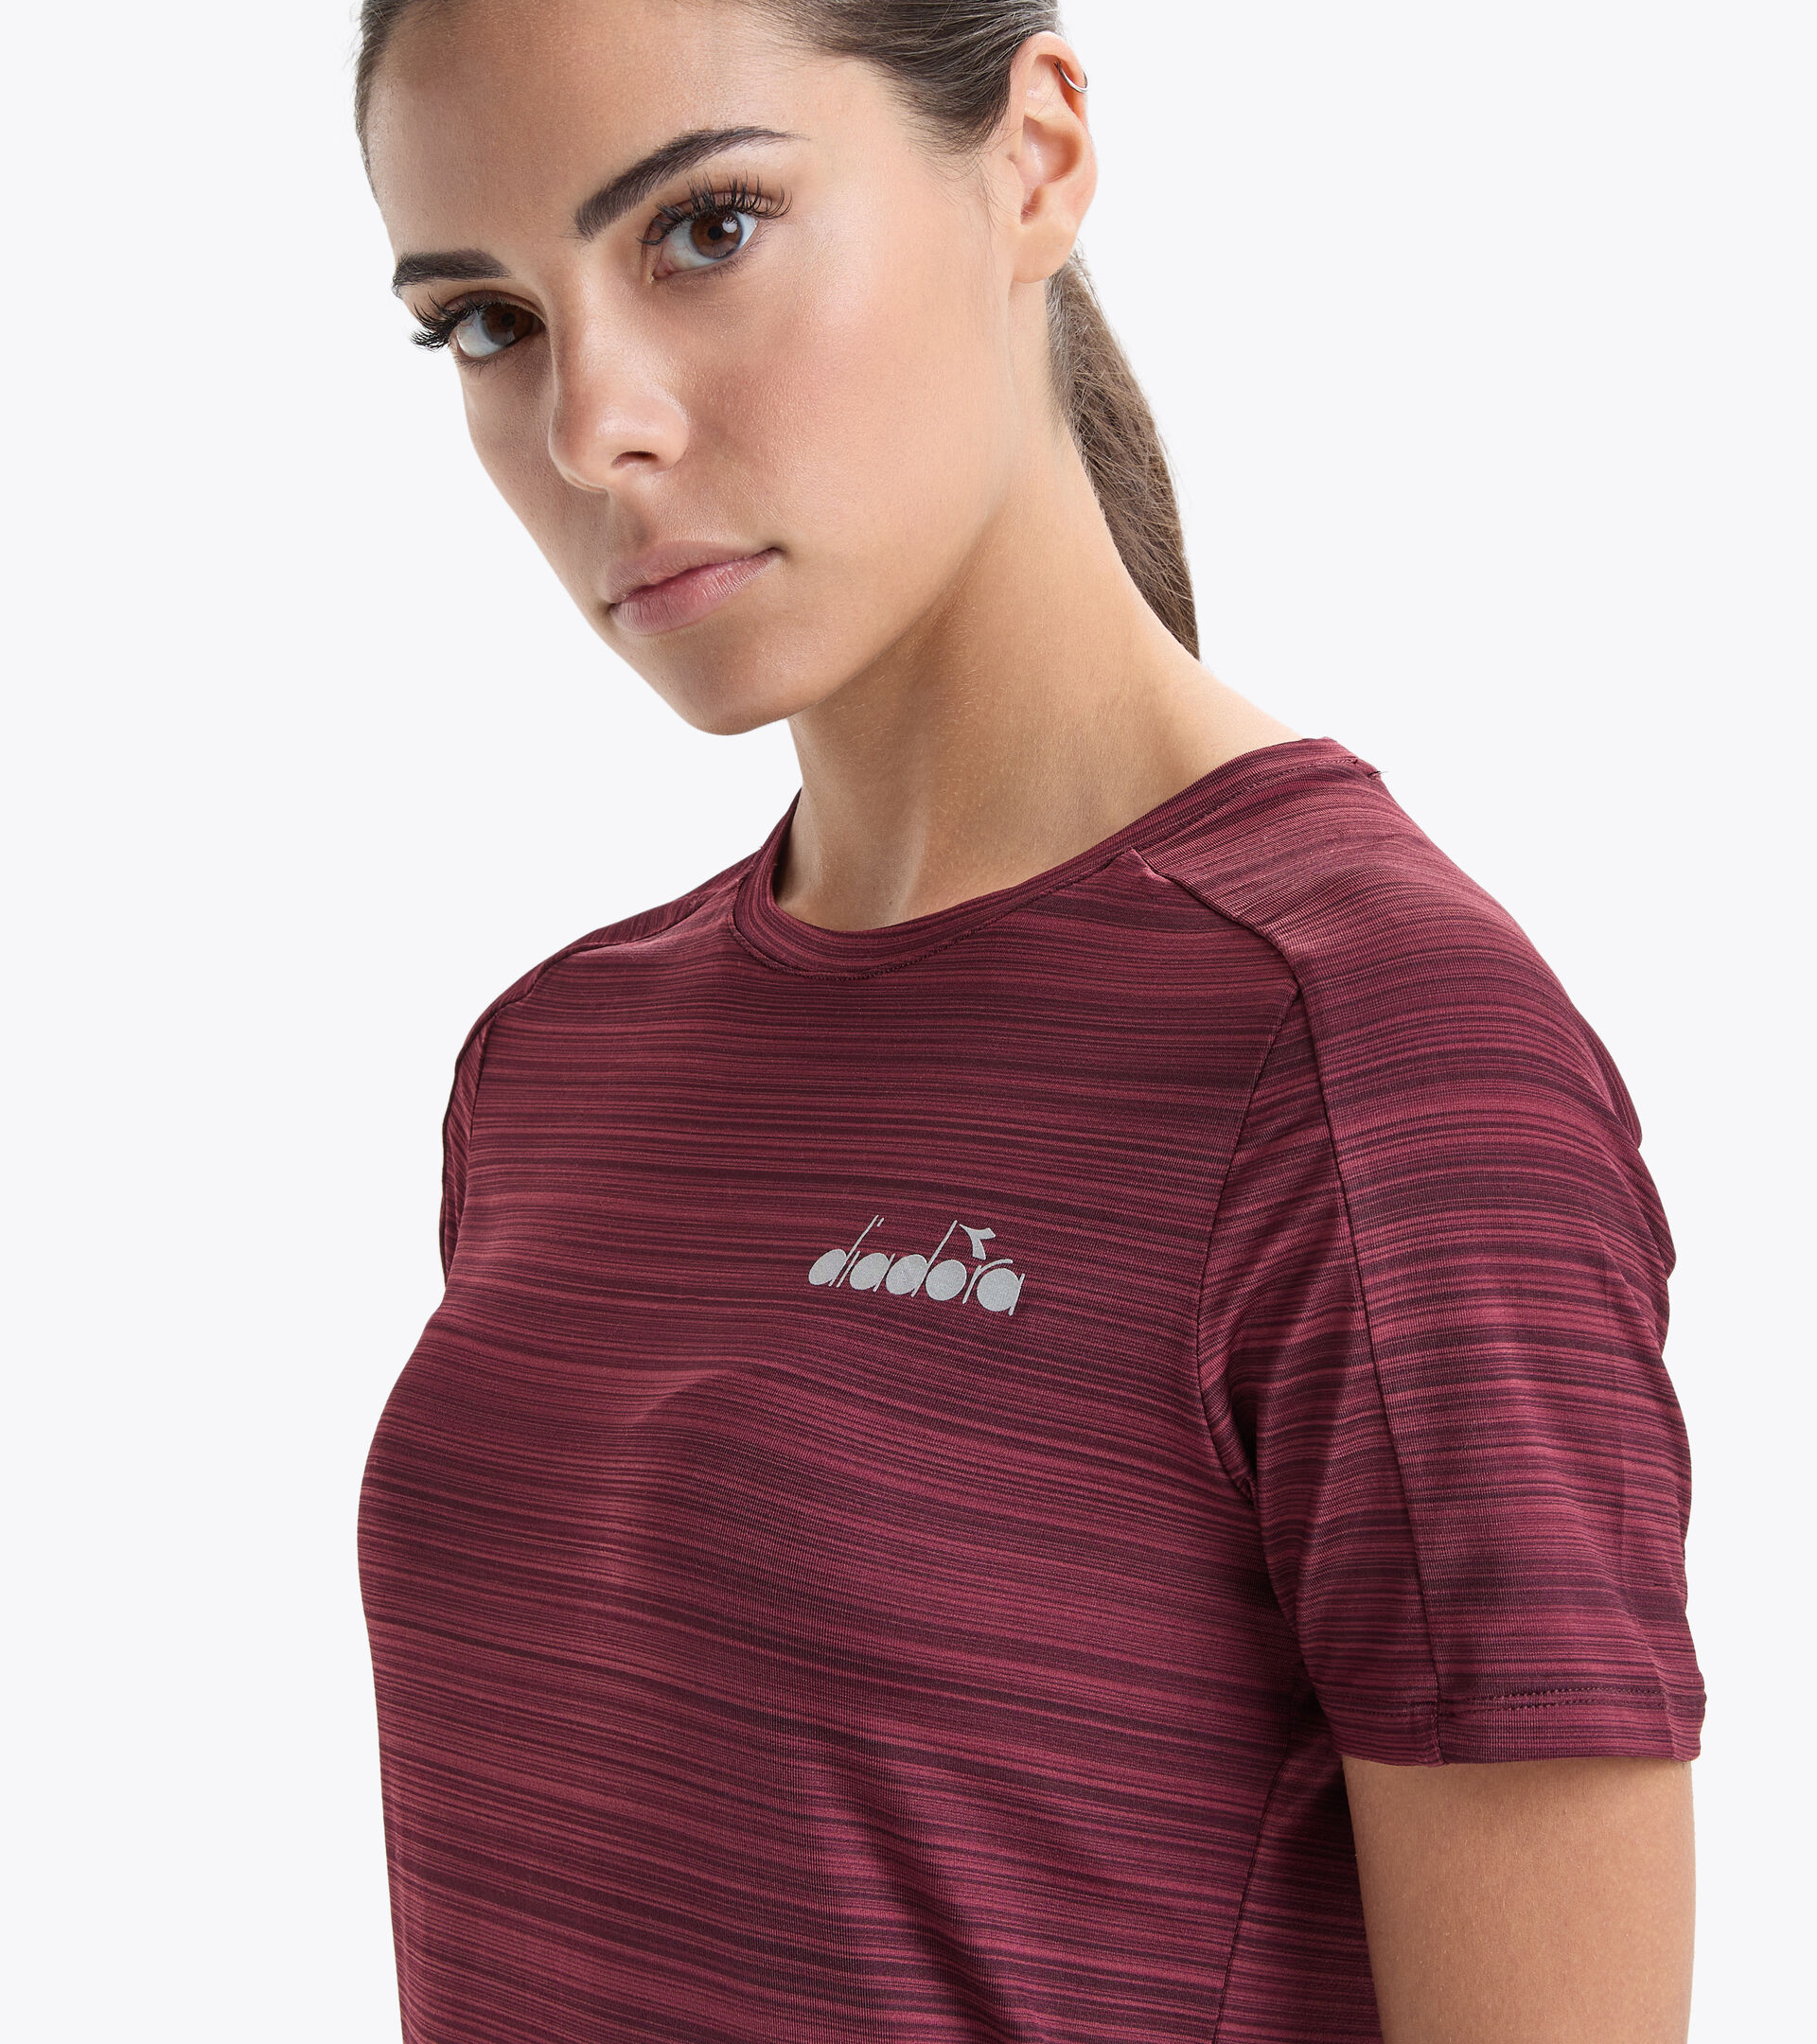 L. SS T-SHIRT TECH BE ONE Running T-shirt - Women - Diadora Online Store US